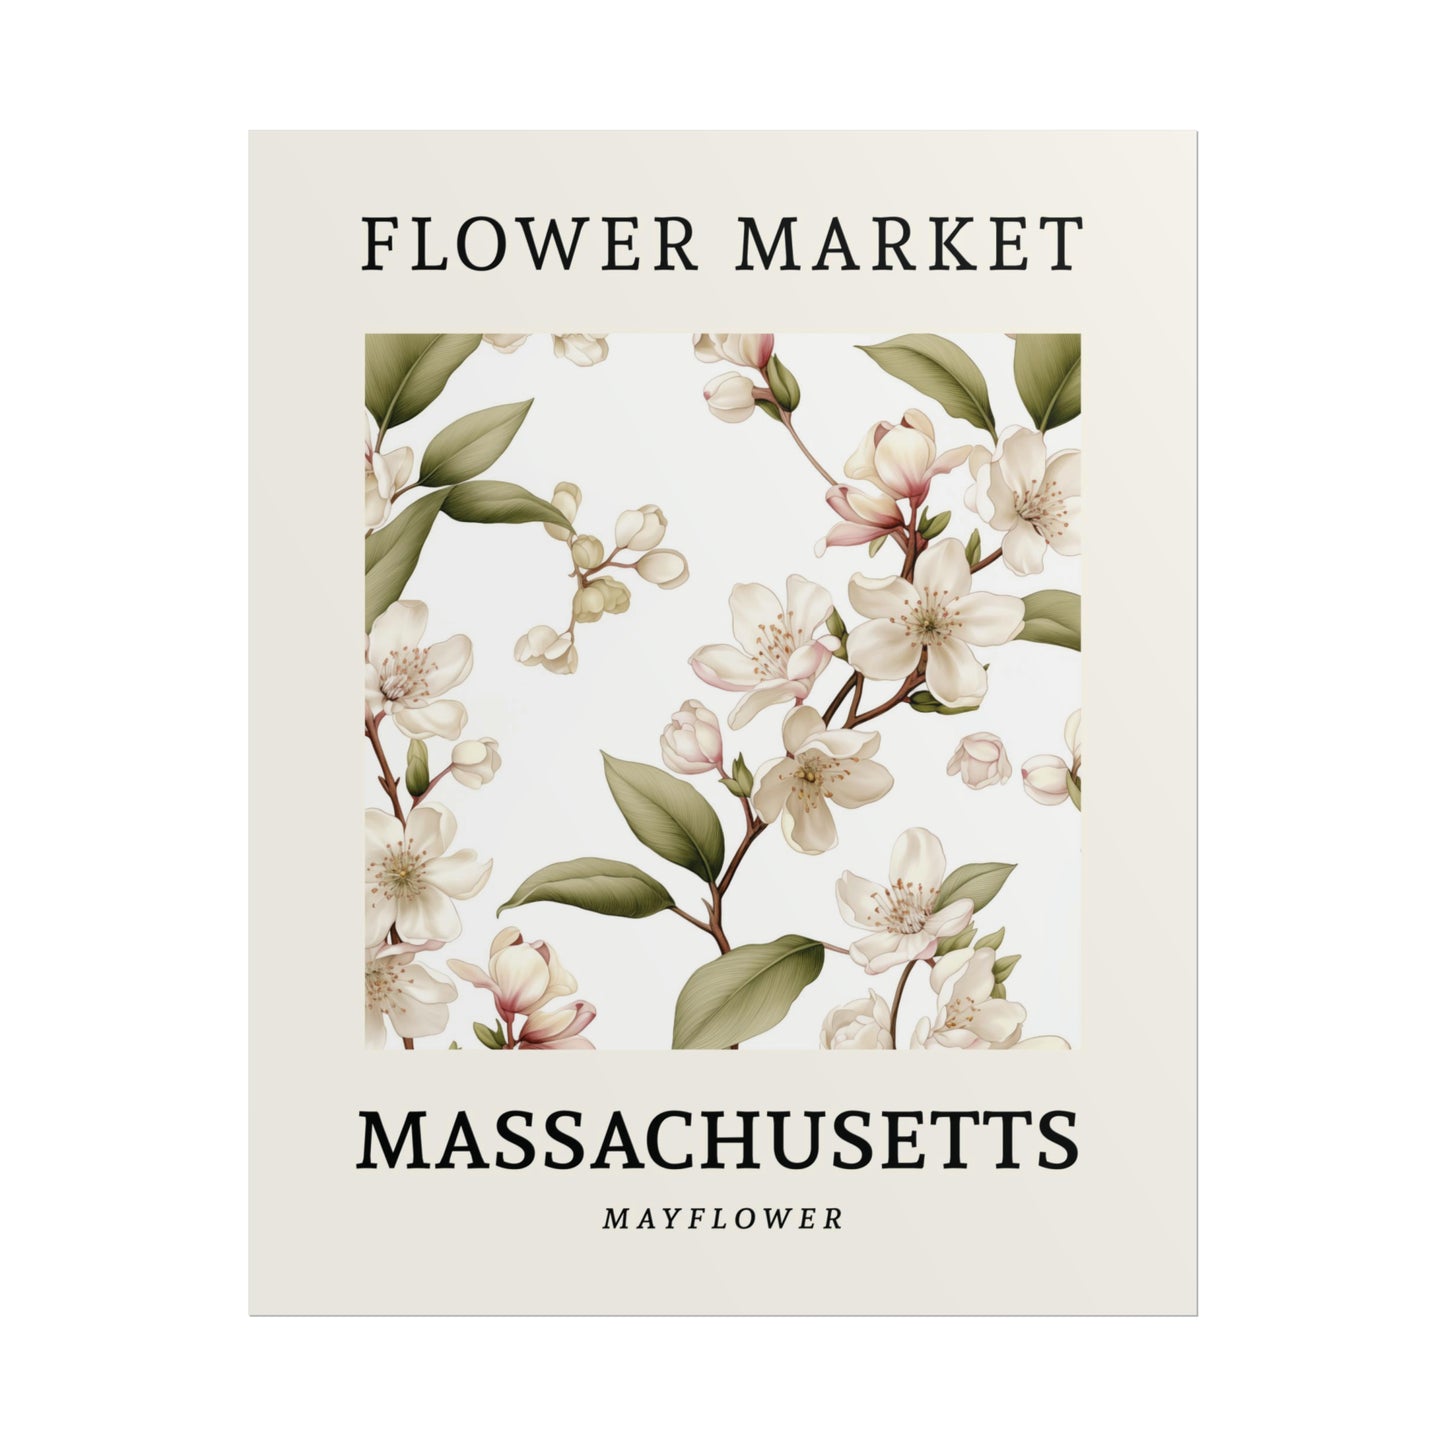 MASSACHUSETTS FLOWER MARKET Poster Mayflower Blooms Print